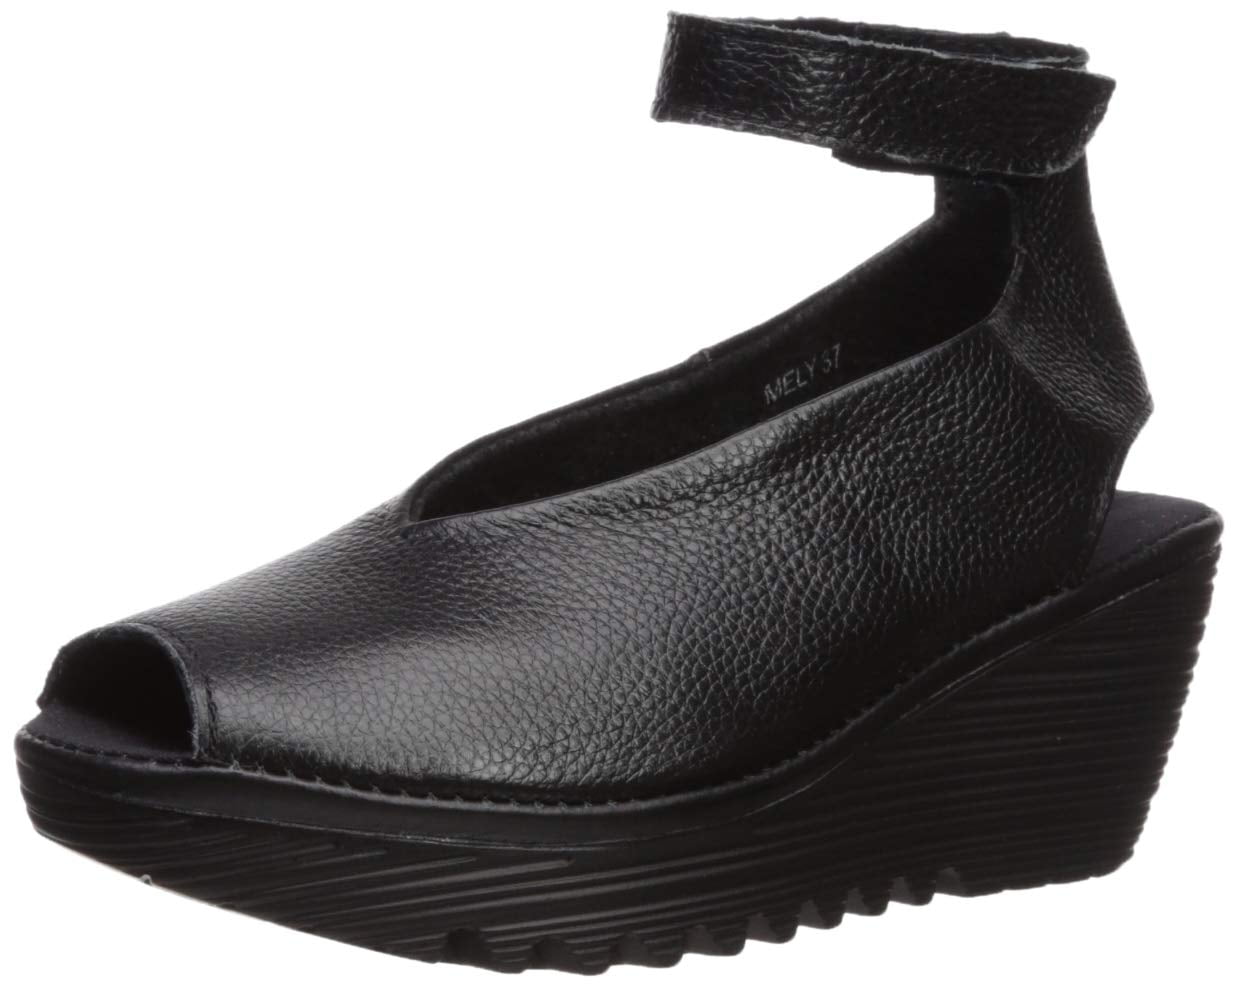 Bernie Mev - Bernie Mev Bernie Mev Women's Mely Platform Shoes Black ...